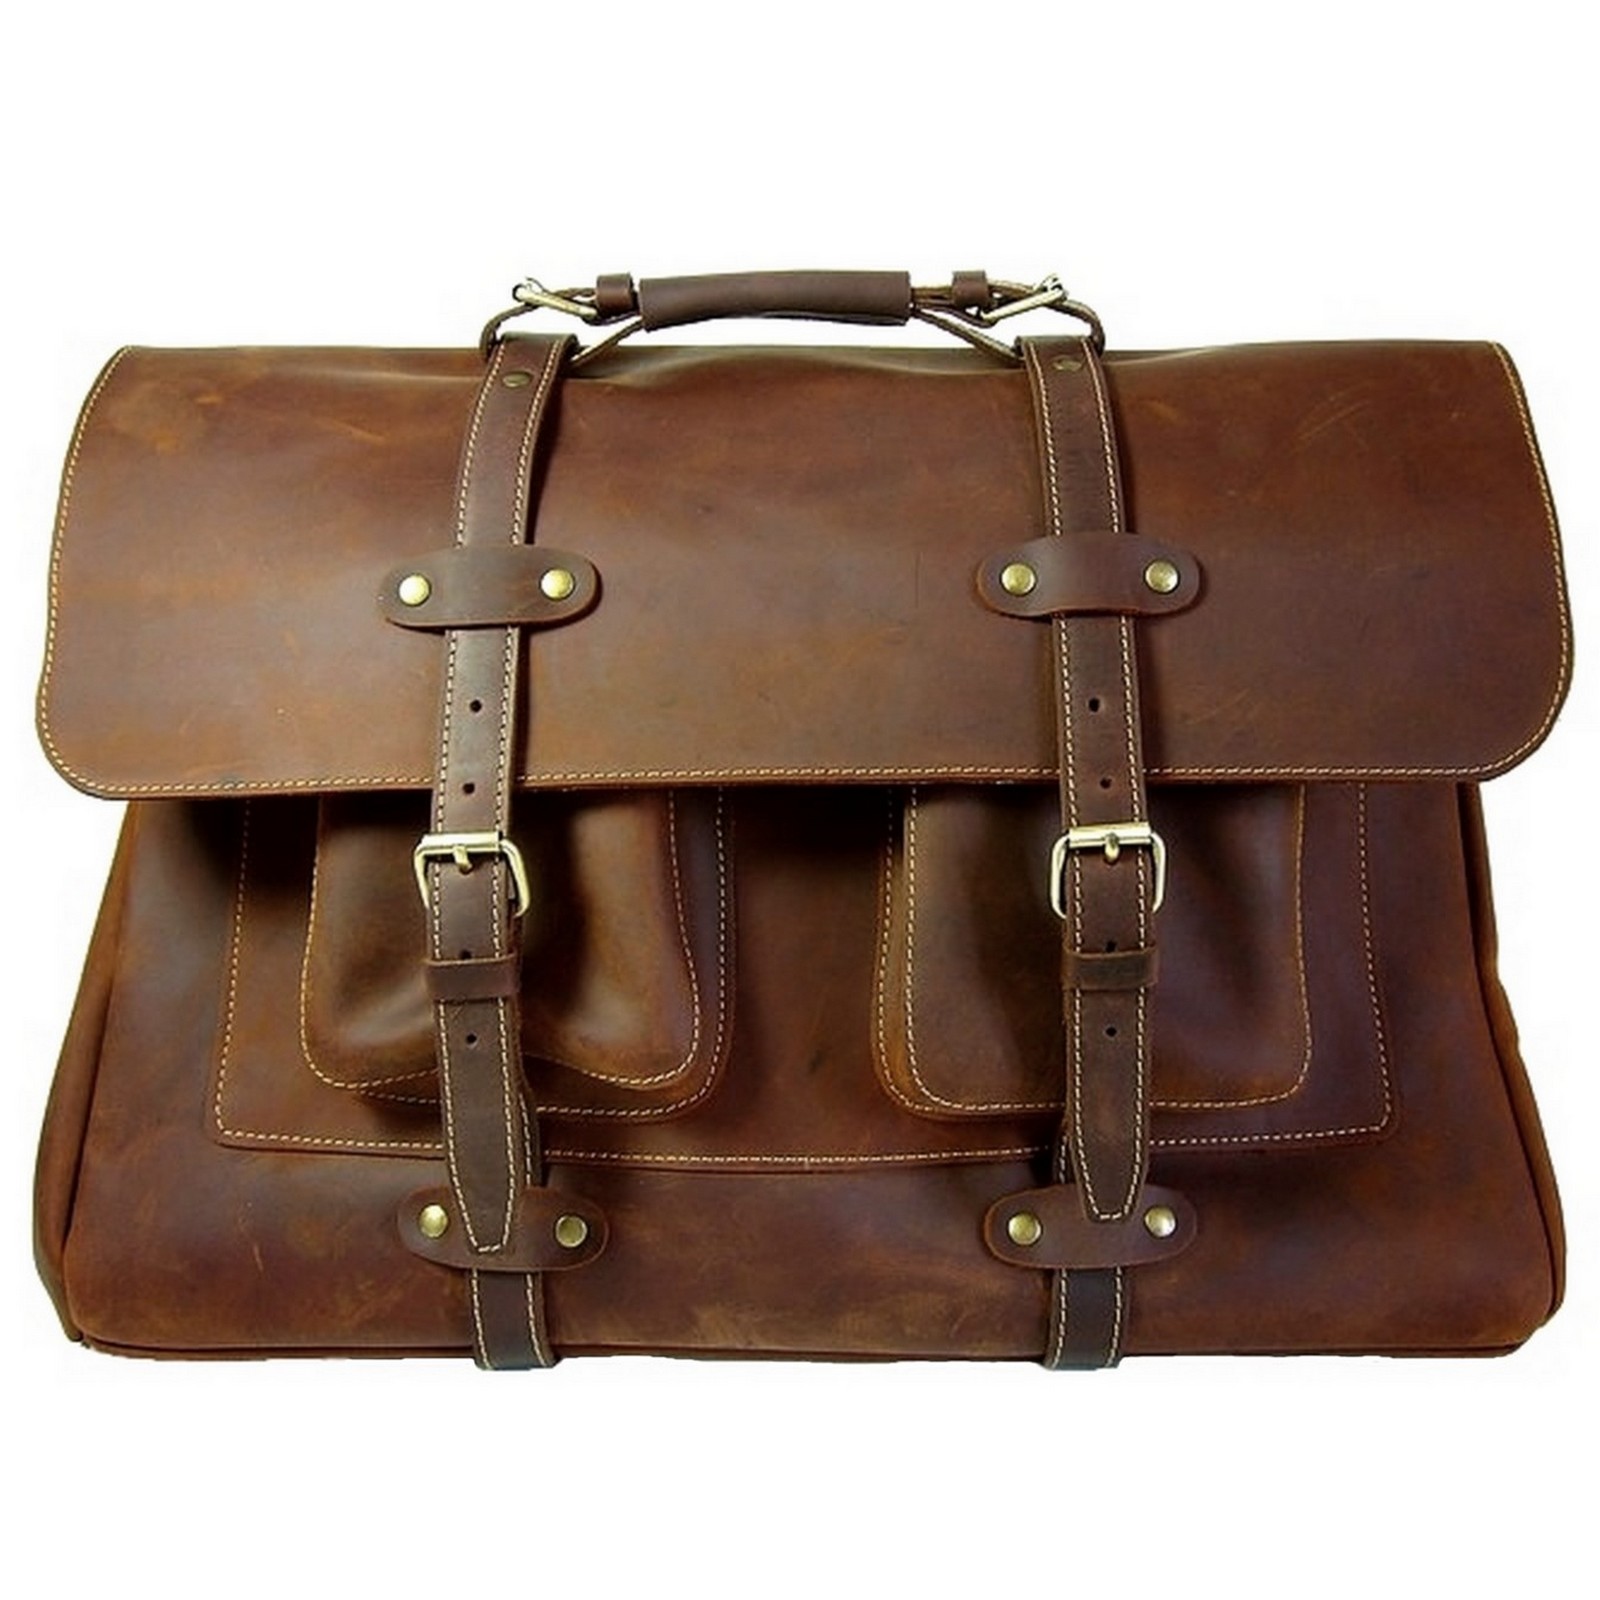 Très beau sac de voyage en cuir marron au style retro!